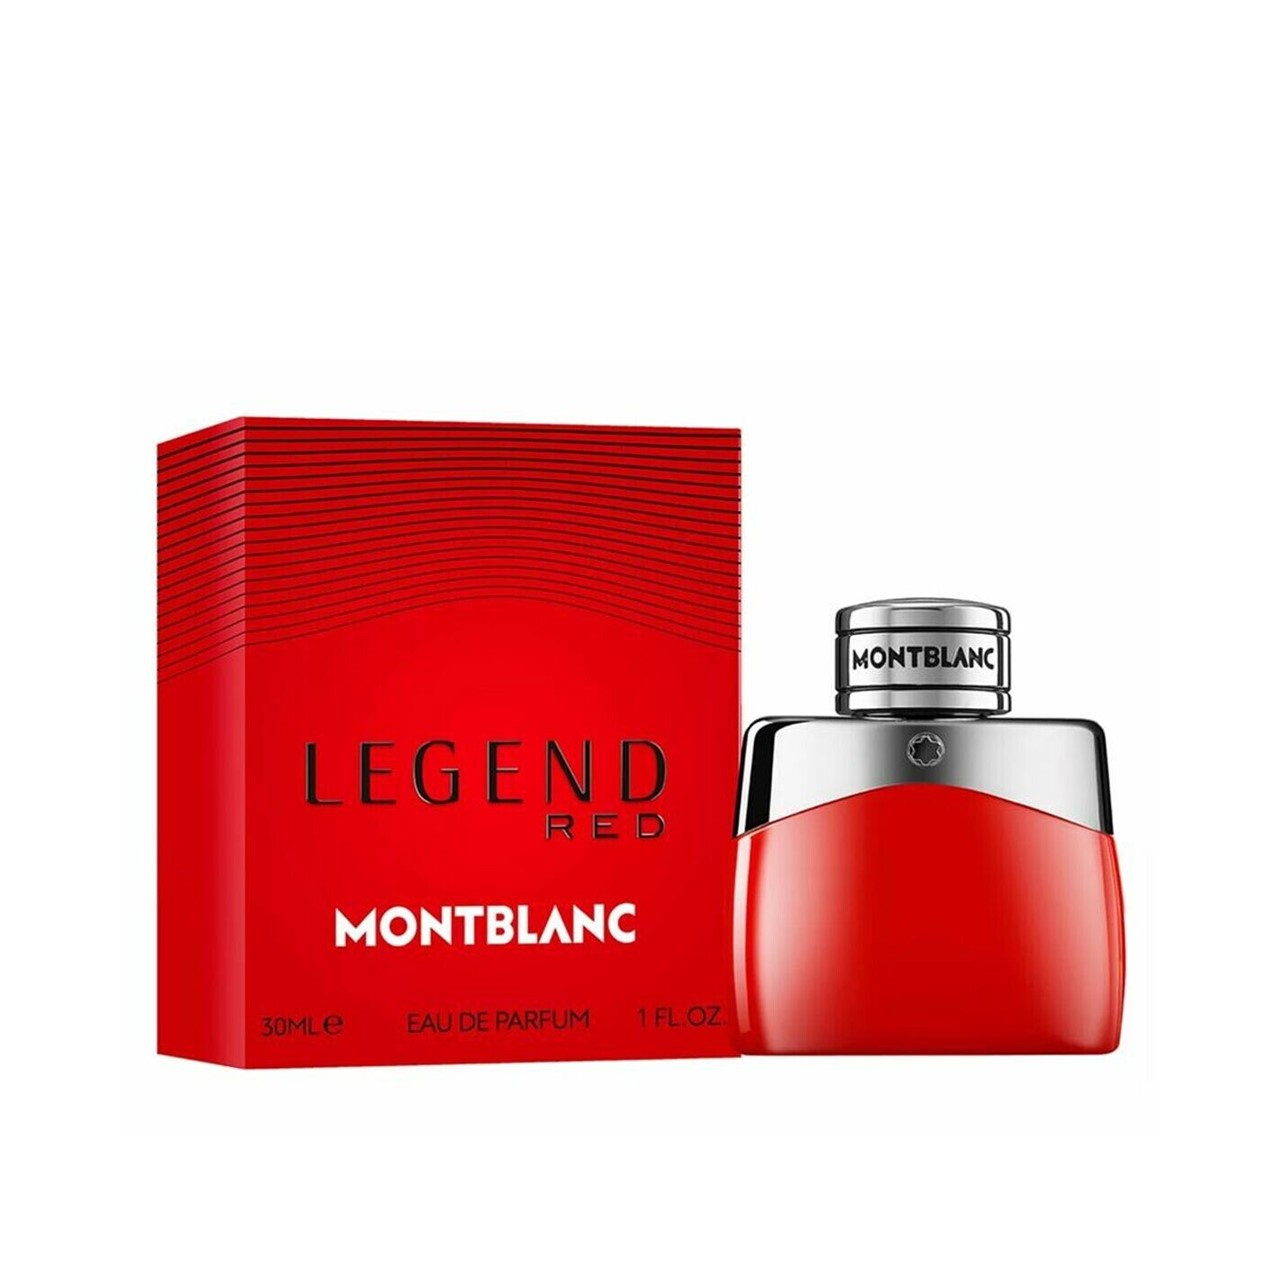 Montblanc Legend Red Eau de Parfum 30ml (1 fl oz)